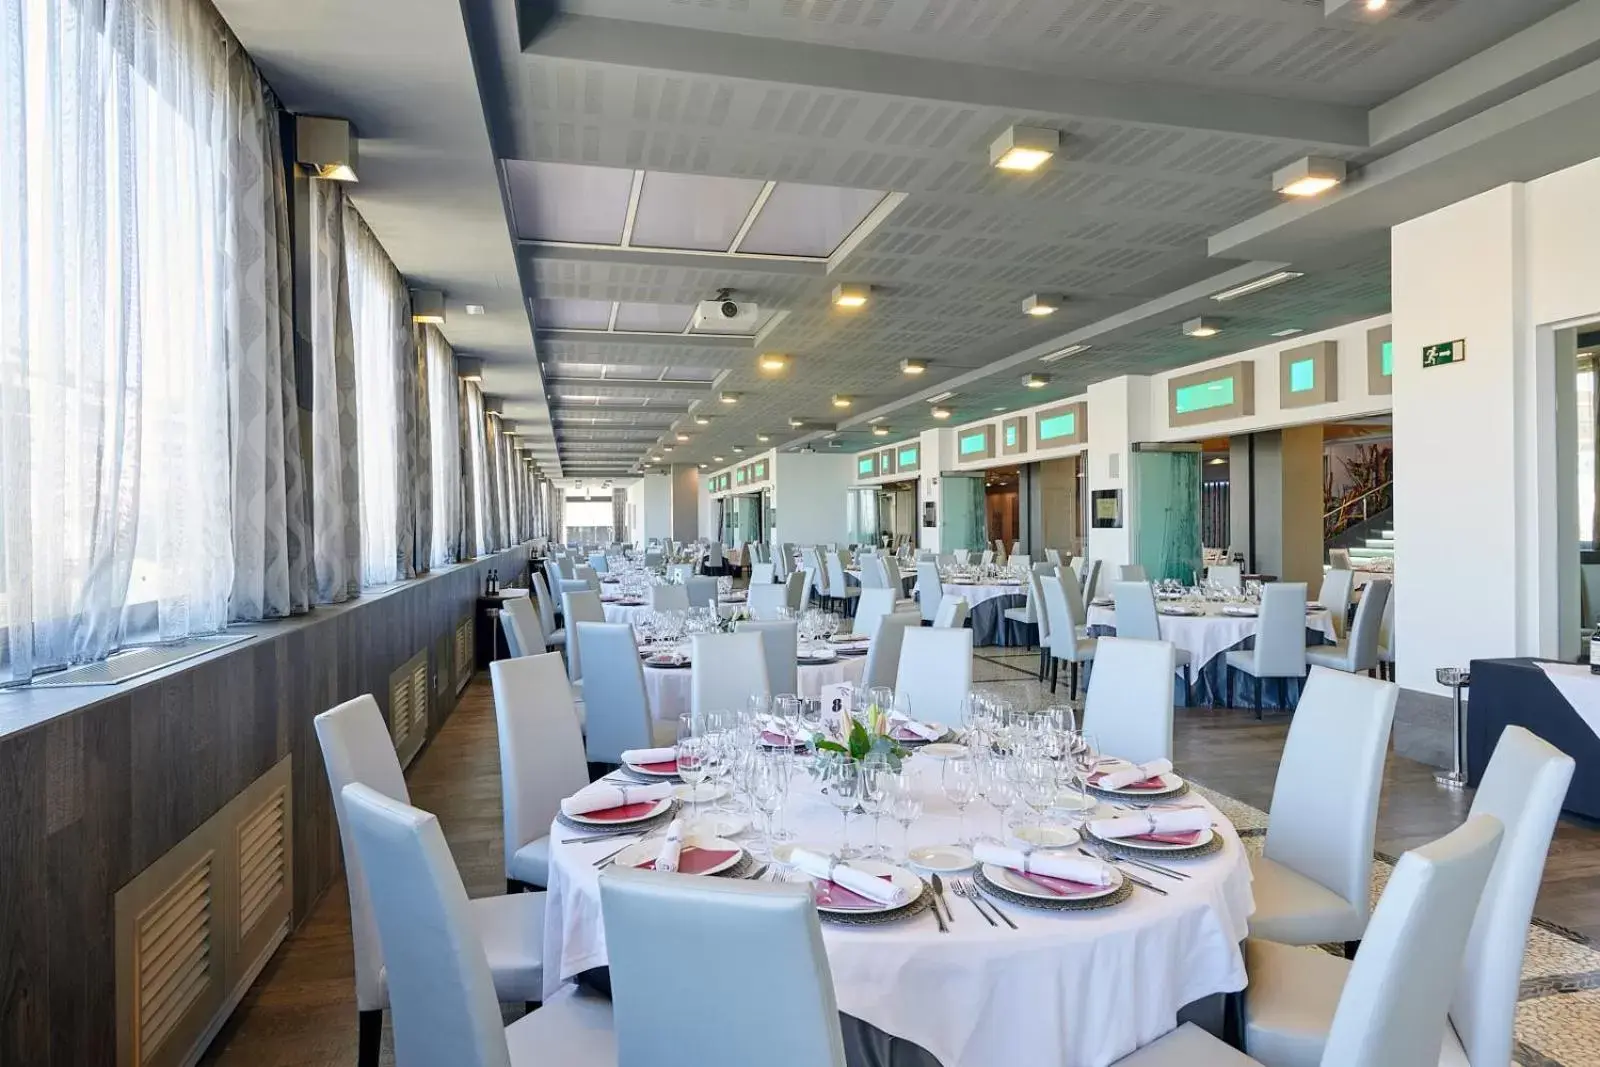 Banquet/Function facilities, Restaurant/Places to Eat in Gran Hotel Luna de Granada